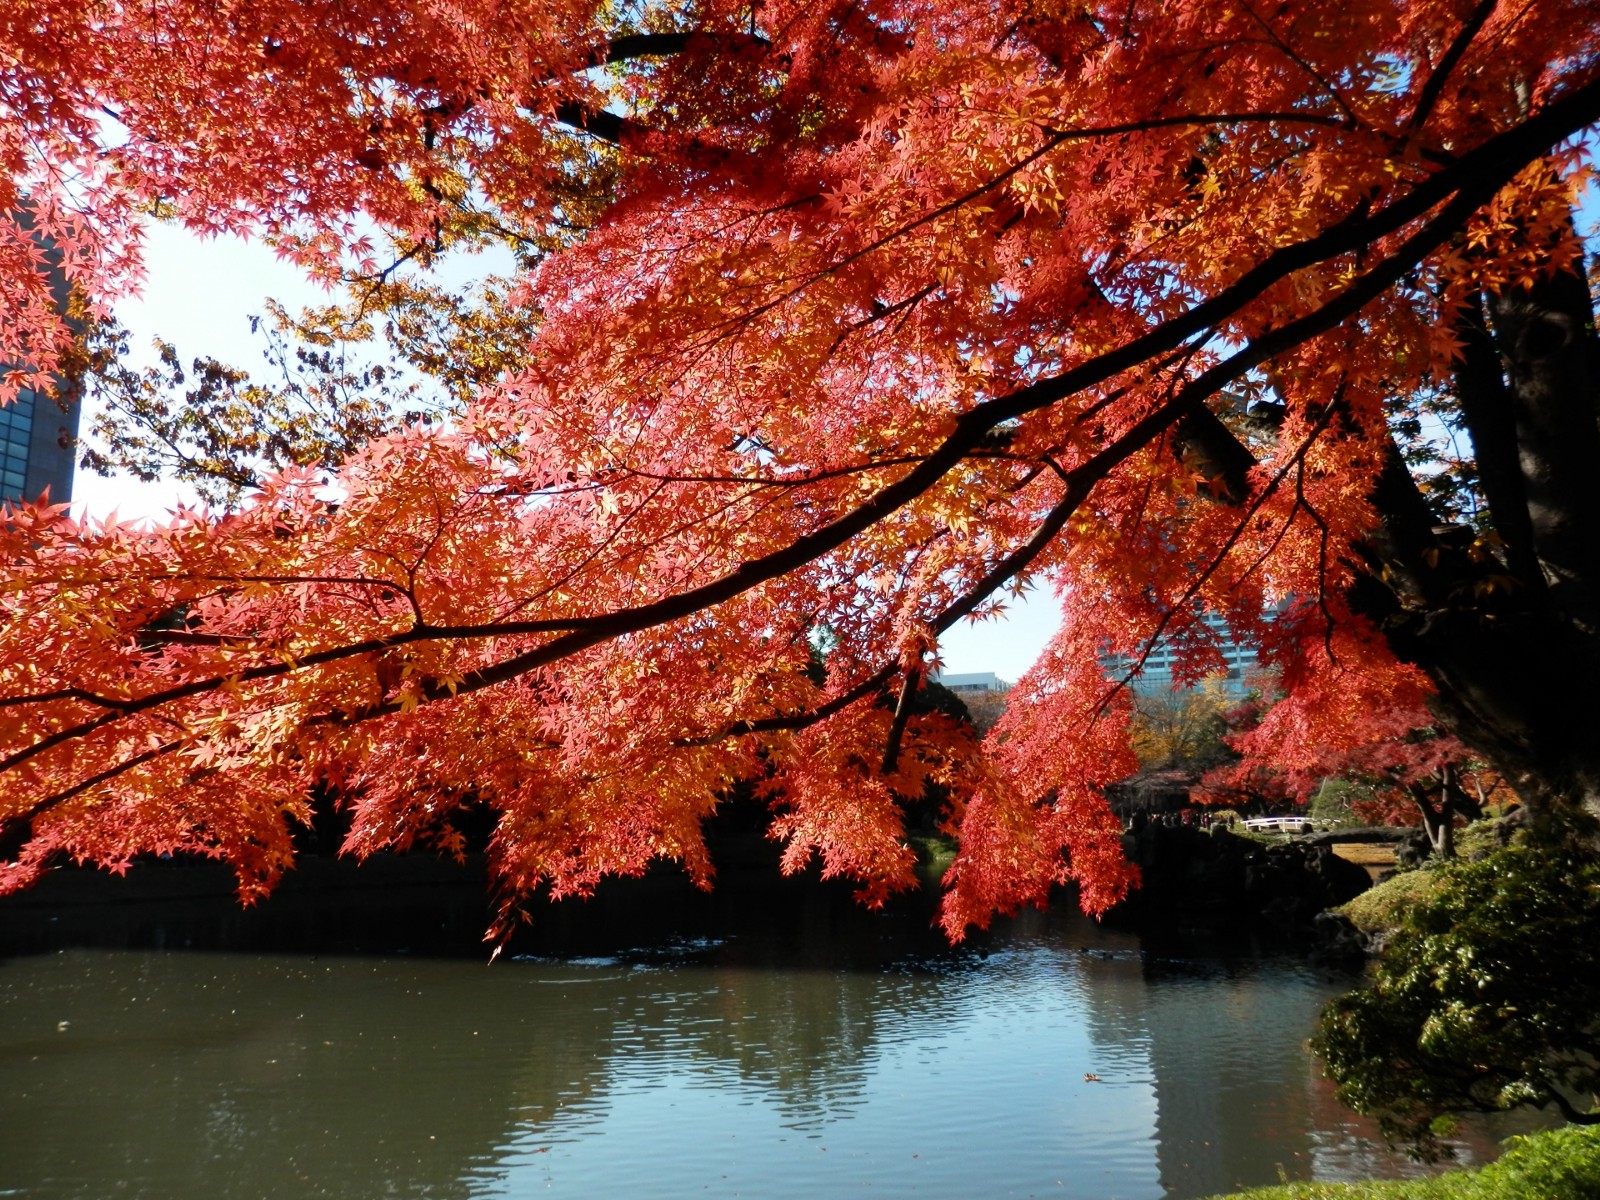 Autumn leaves at Koishikawa Korakuen Garden